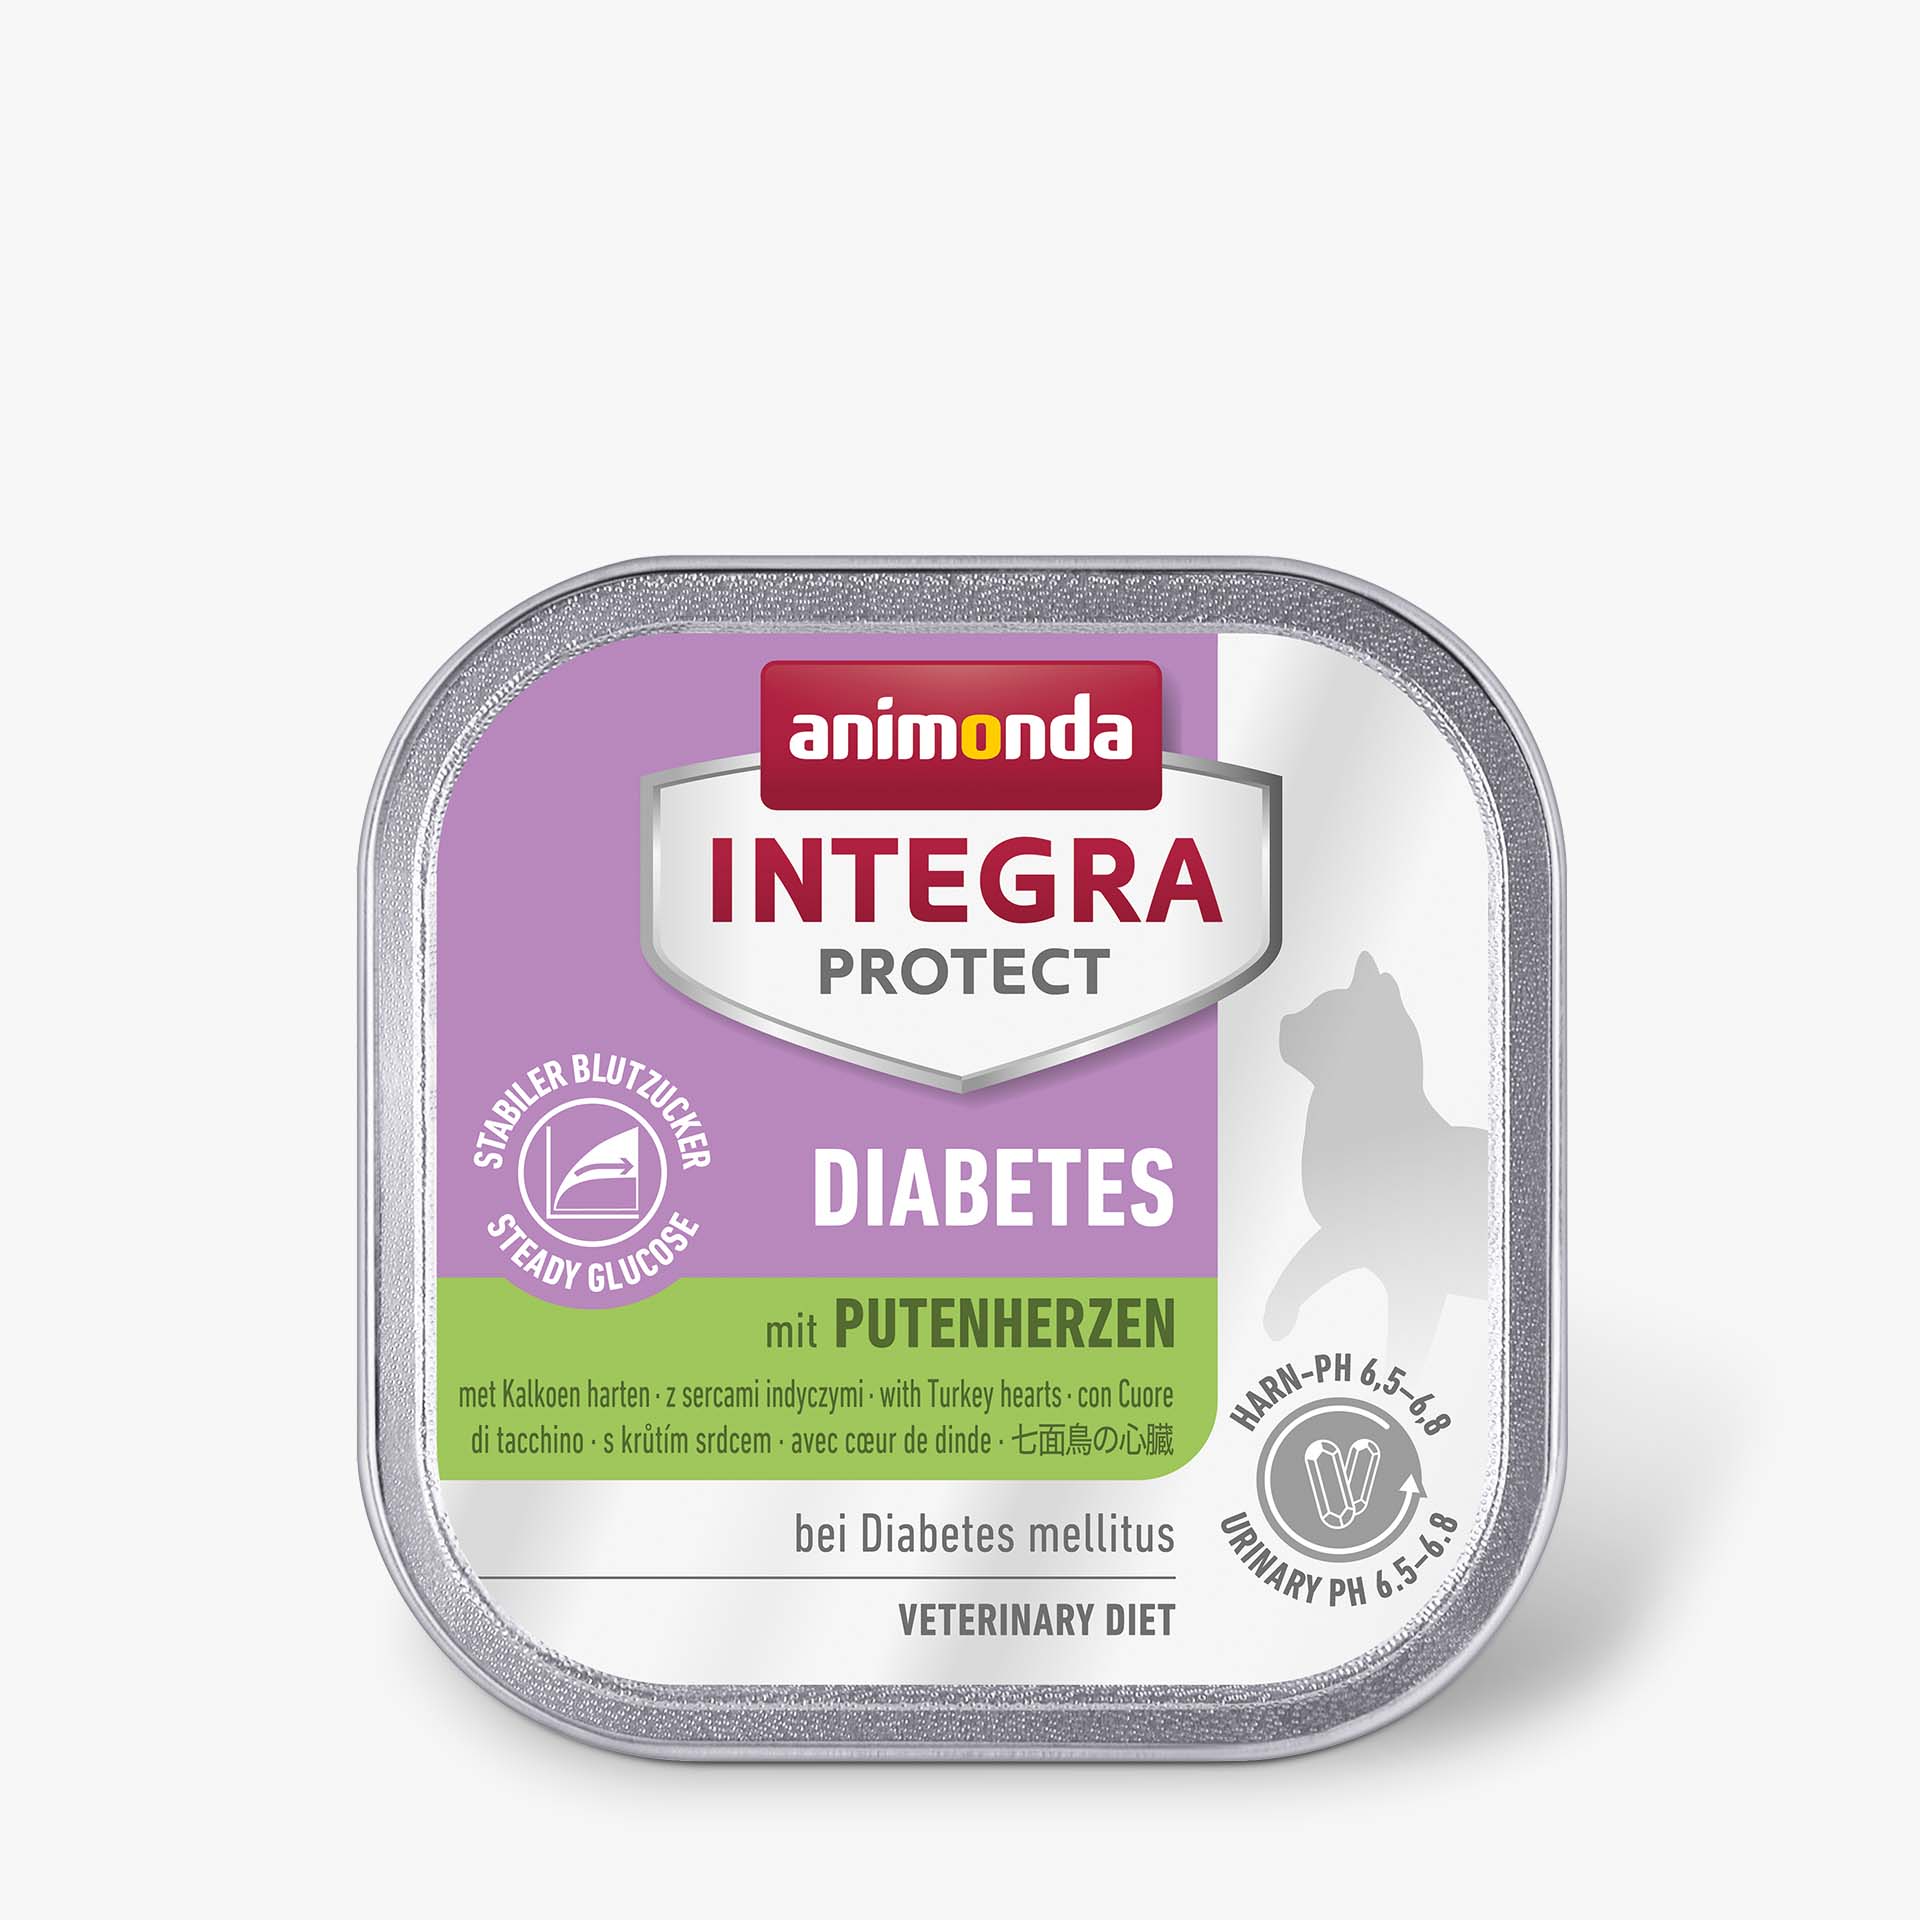 INTEGRA PROTECT with Turkey hearts Diabetes